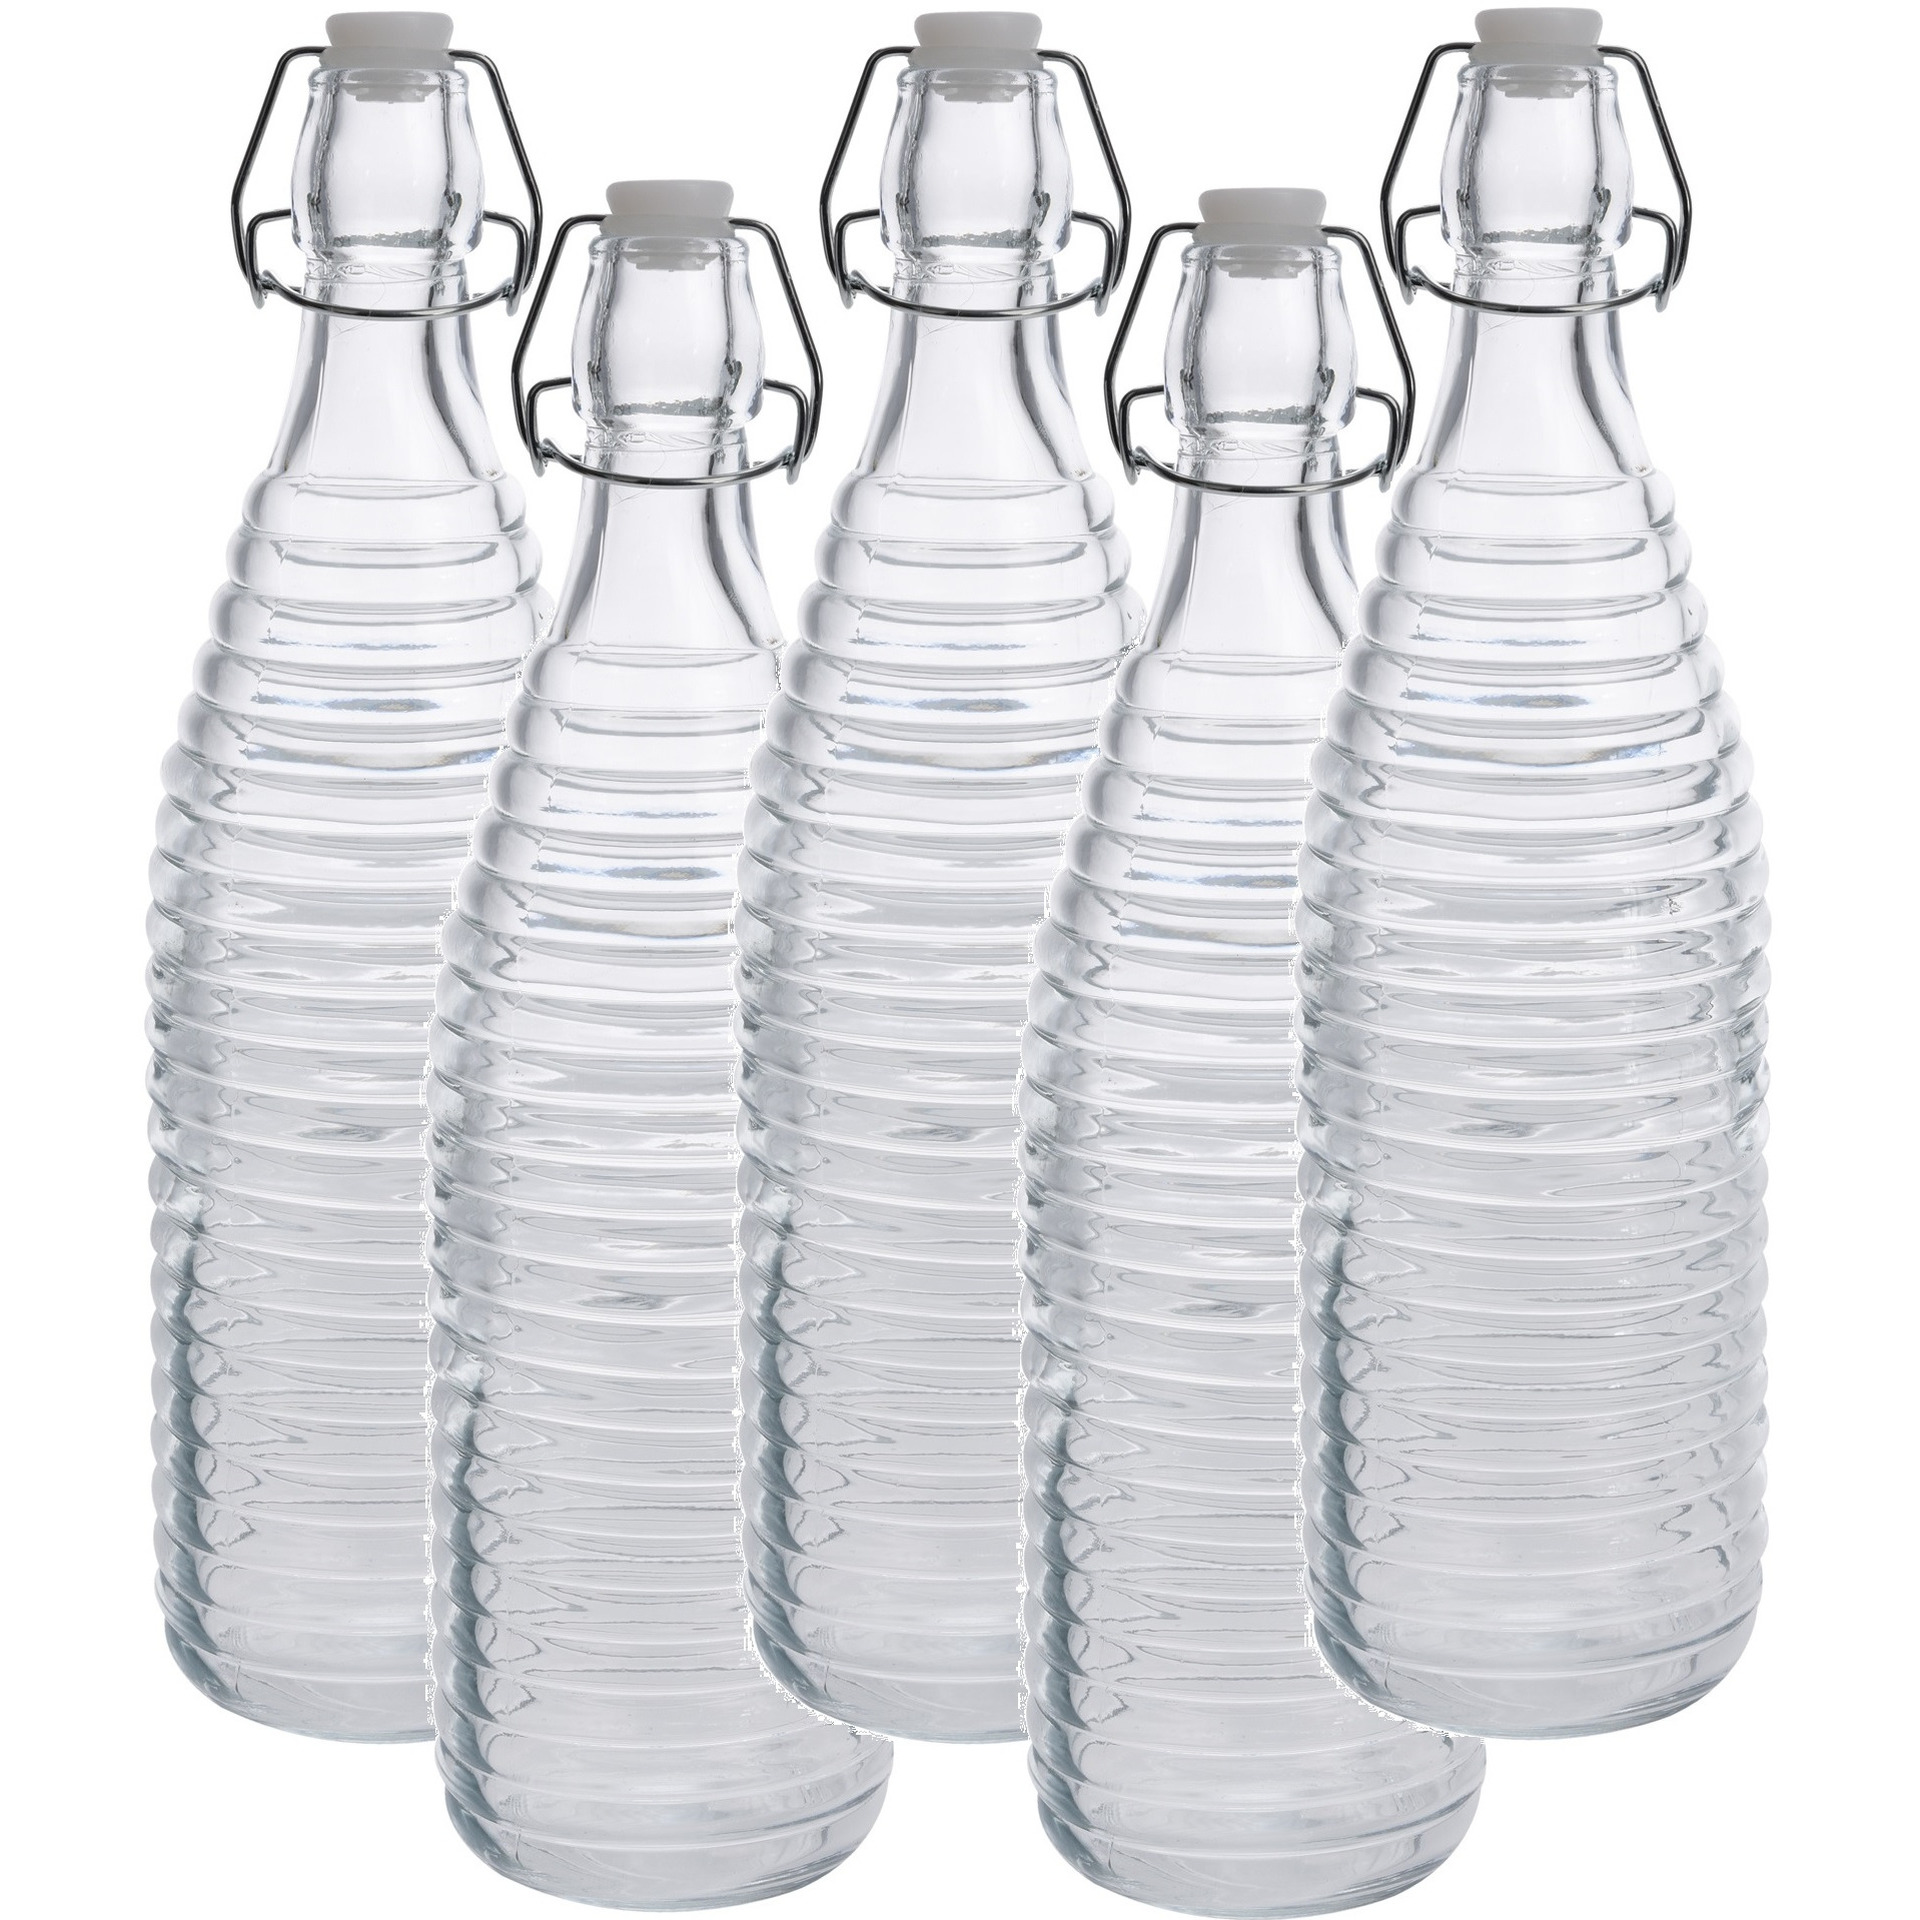 5x Glazen decoratie flessen transparant met beugeldop 1000 ml